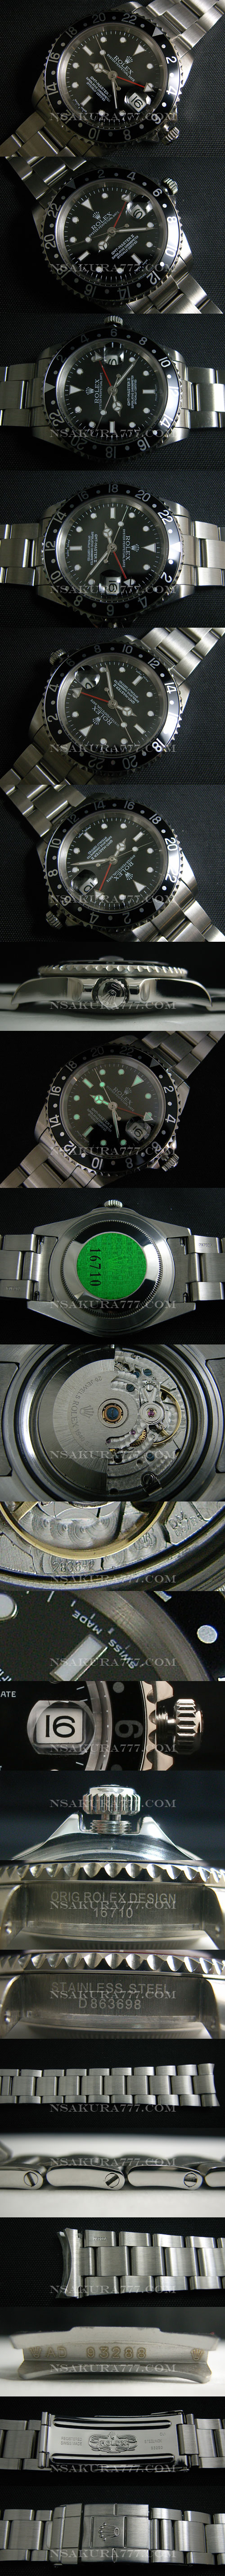 レプリカ時計ロレックス GMT マスター最新改良白2836-2搭載 - ウインドウを閉じる